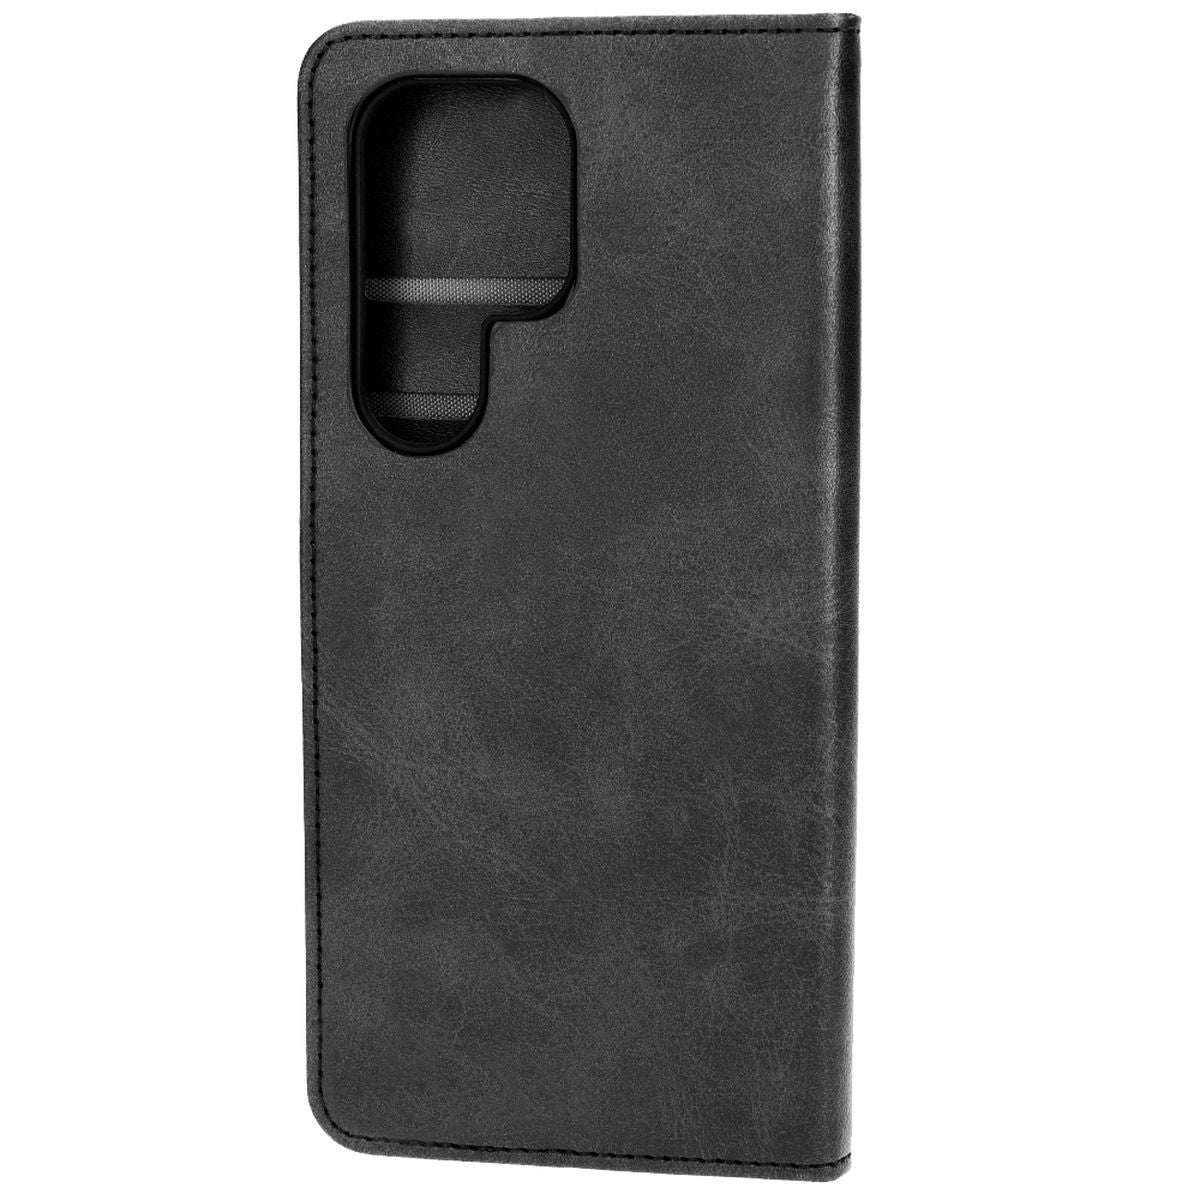 Schutzhülle Bizon Case Pocket für Samsung Galaxy S23 Ultra, Schwarz